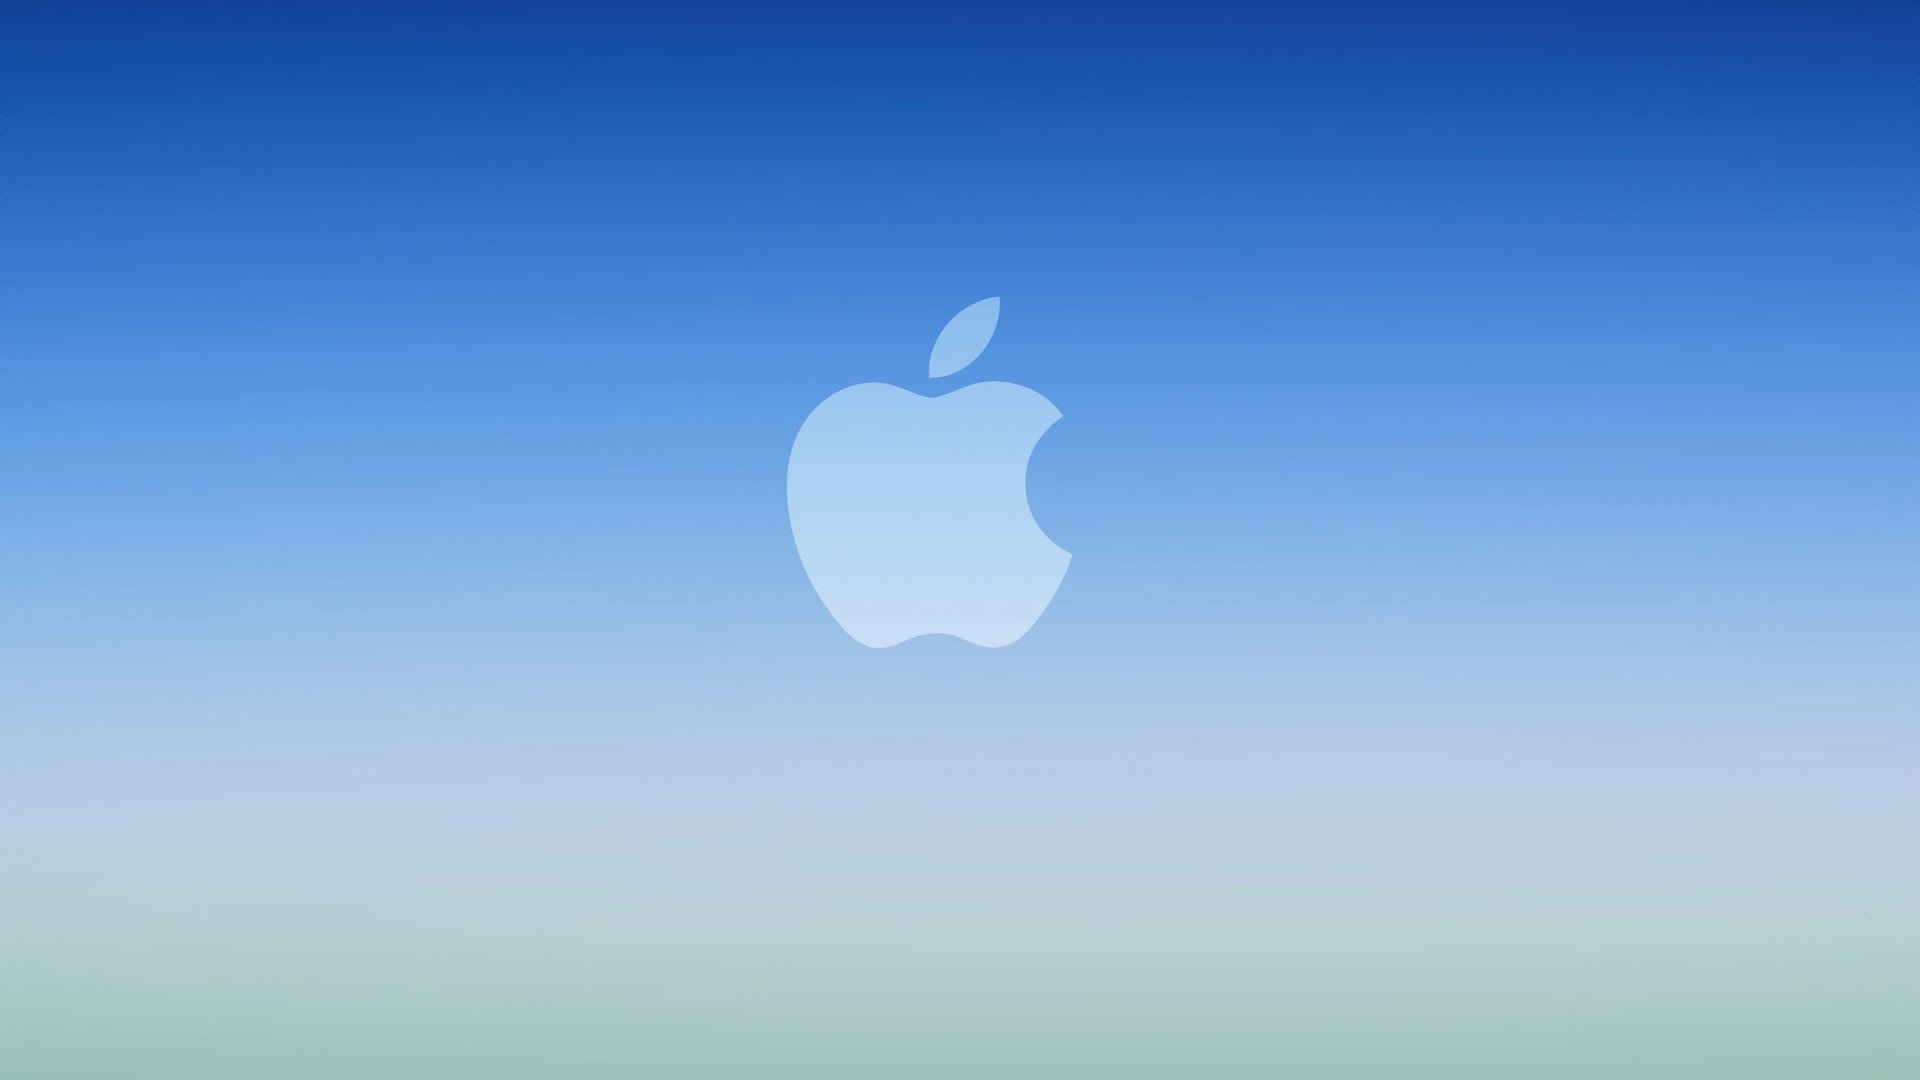 Обои на айфон без. Логотип Apple. Обои Apple. Обои на айфон. Обои Apple iphone.